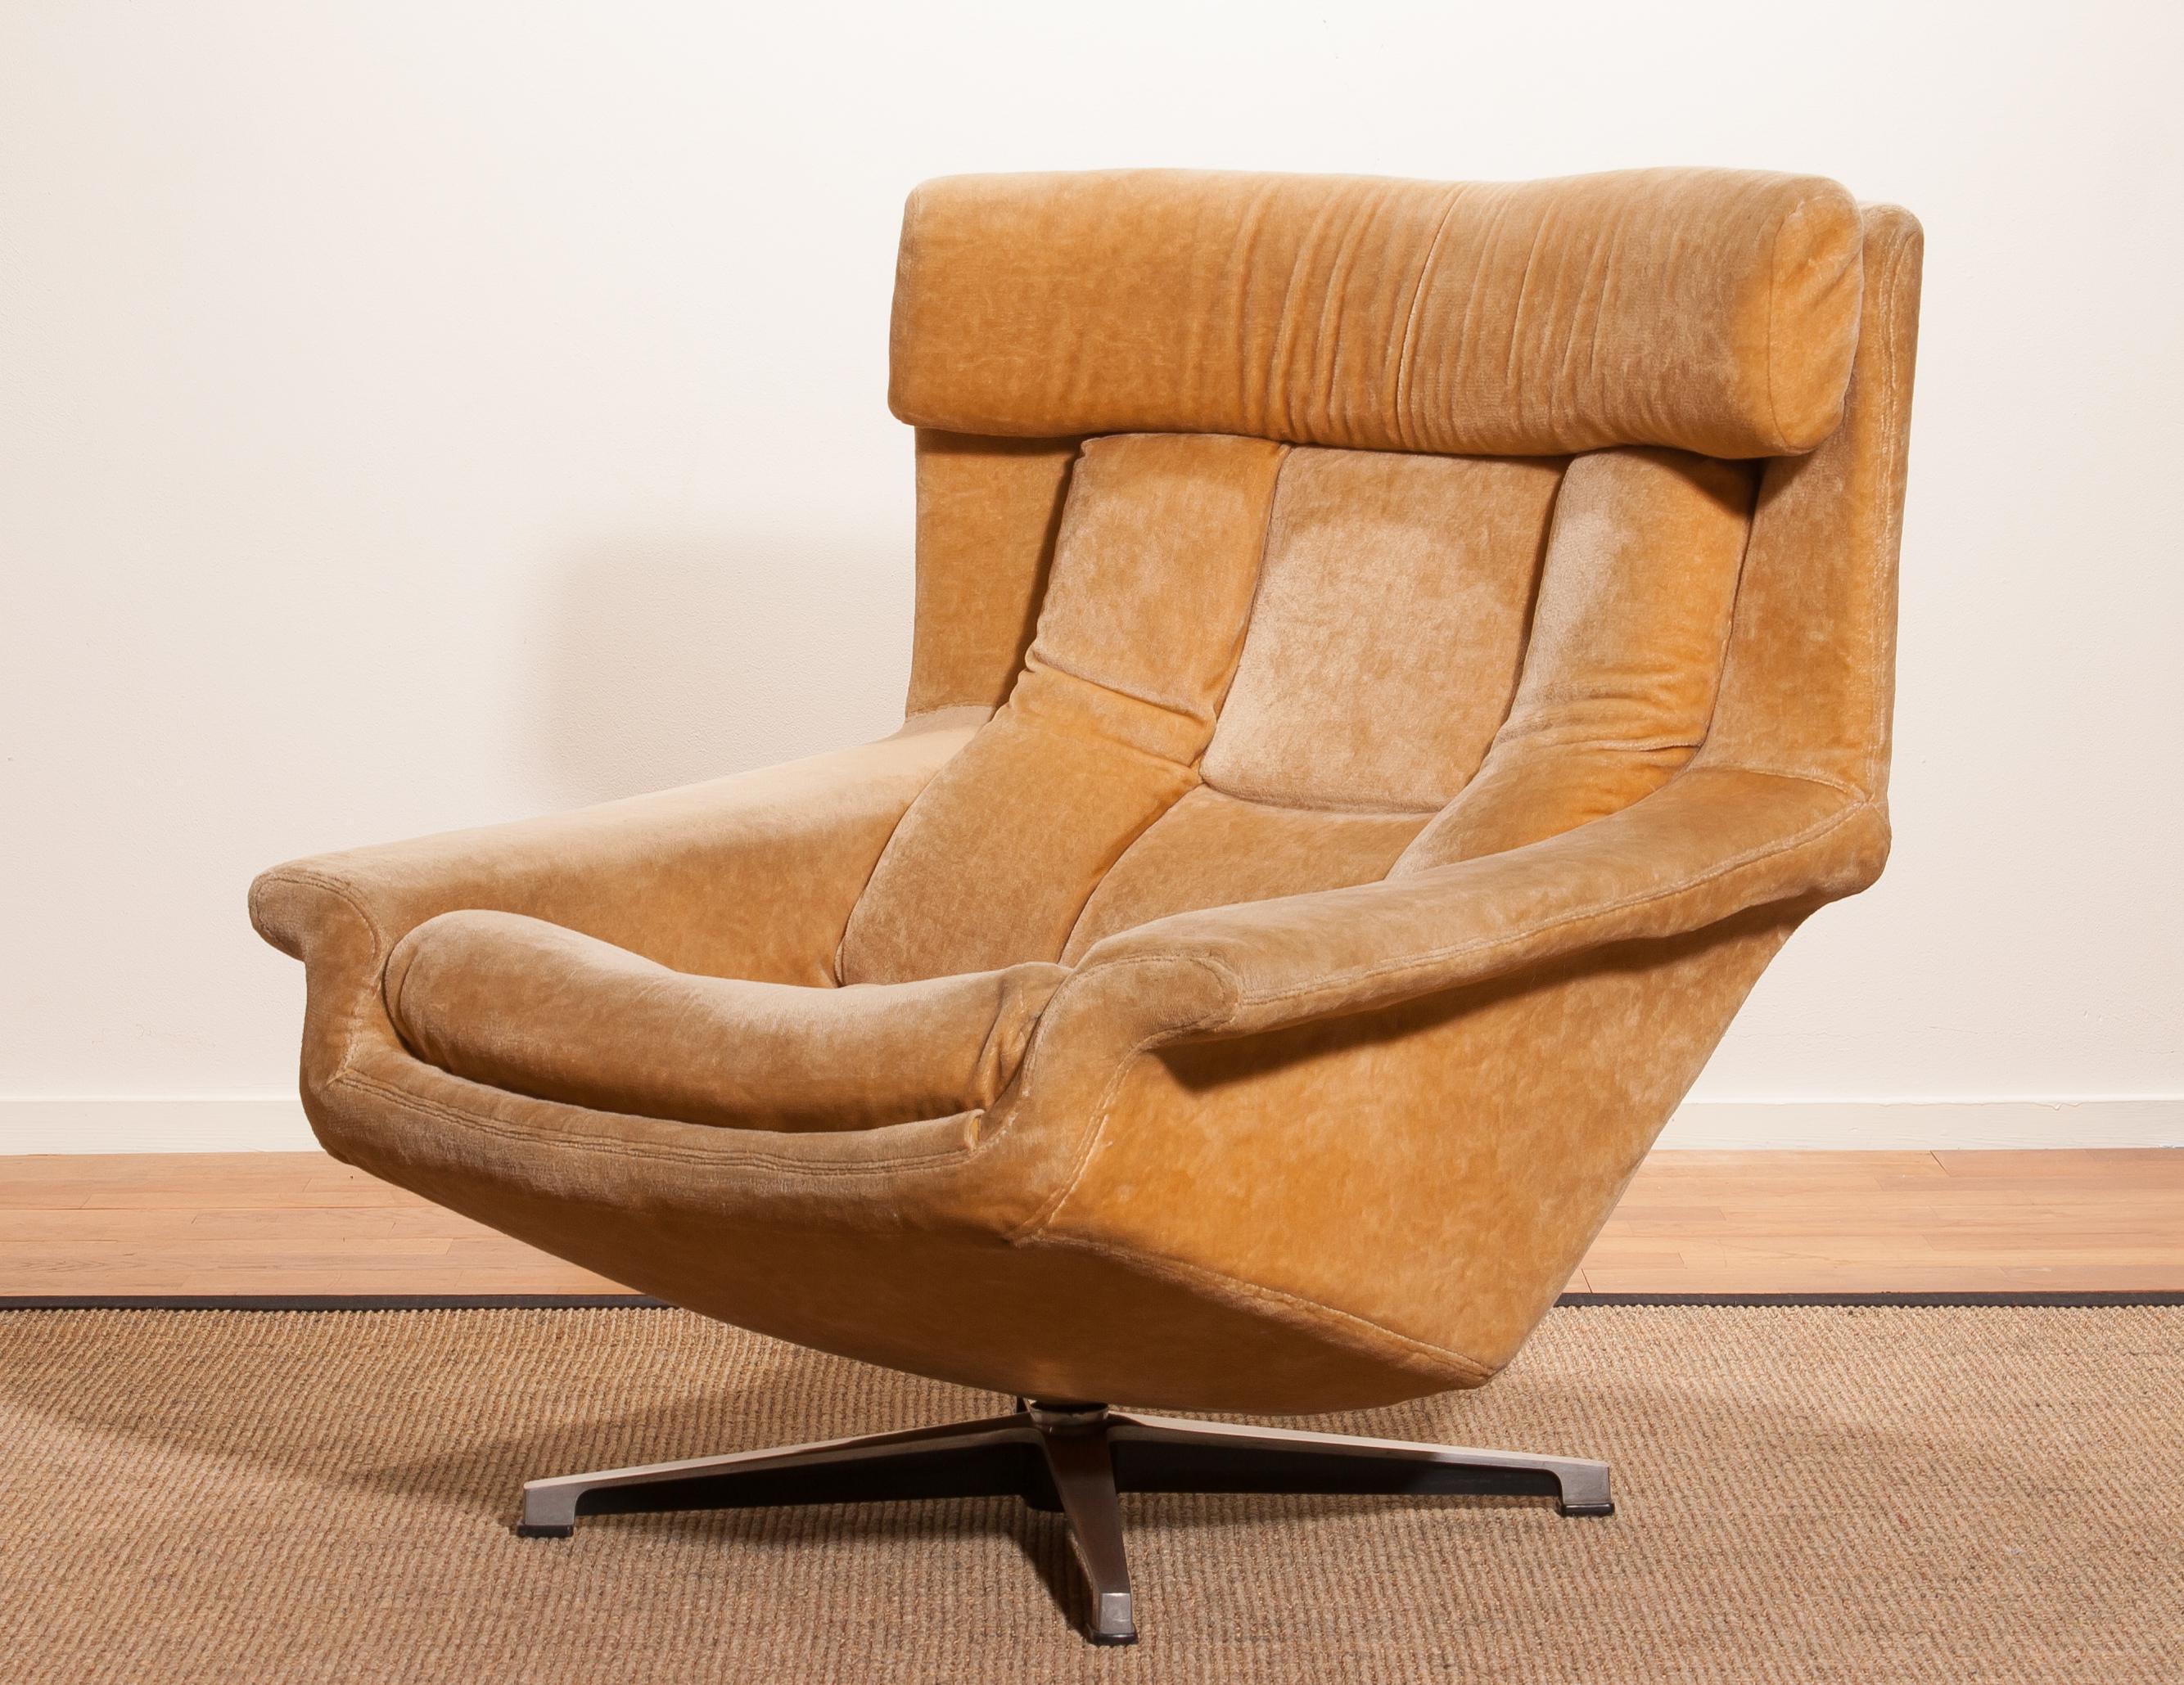 1960s, Golden/Beige Velvet Swivel Lounge Chair 'Bamse' by Bra Bohag AB Sweden 3